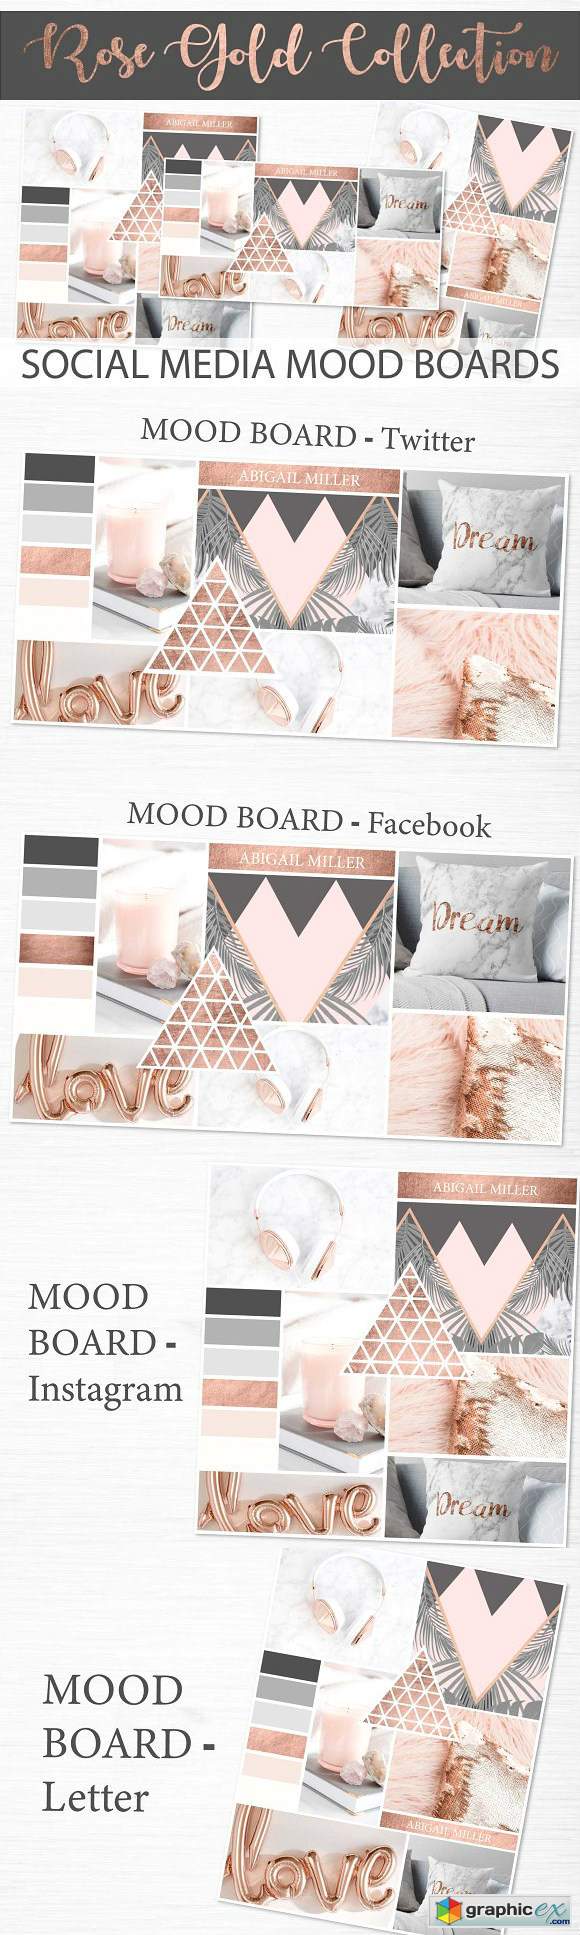 Social Media Mood Boards - Rose Gold